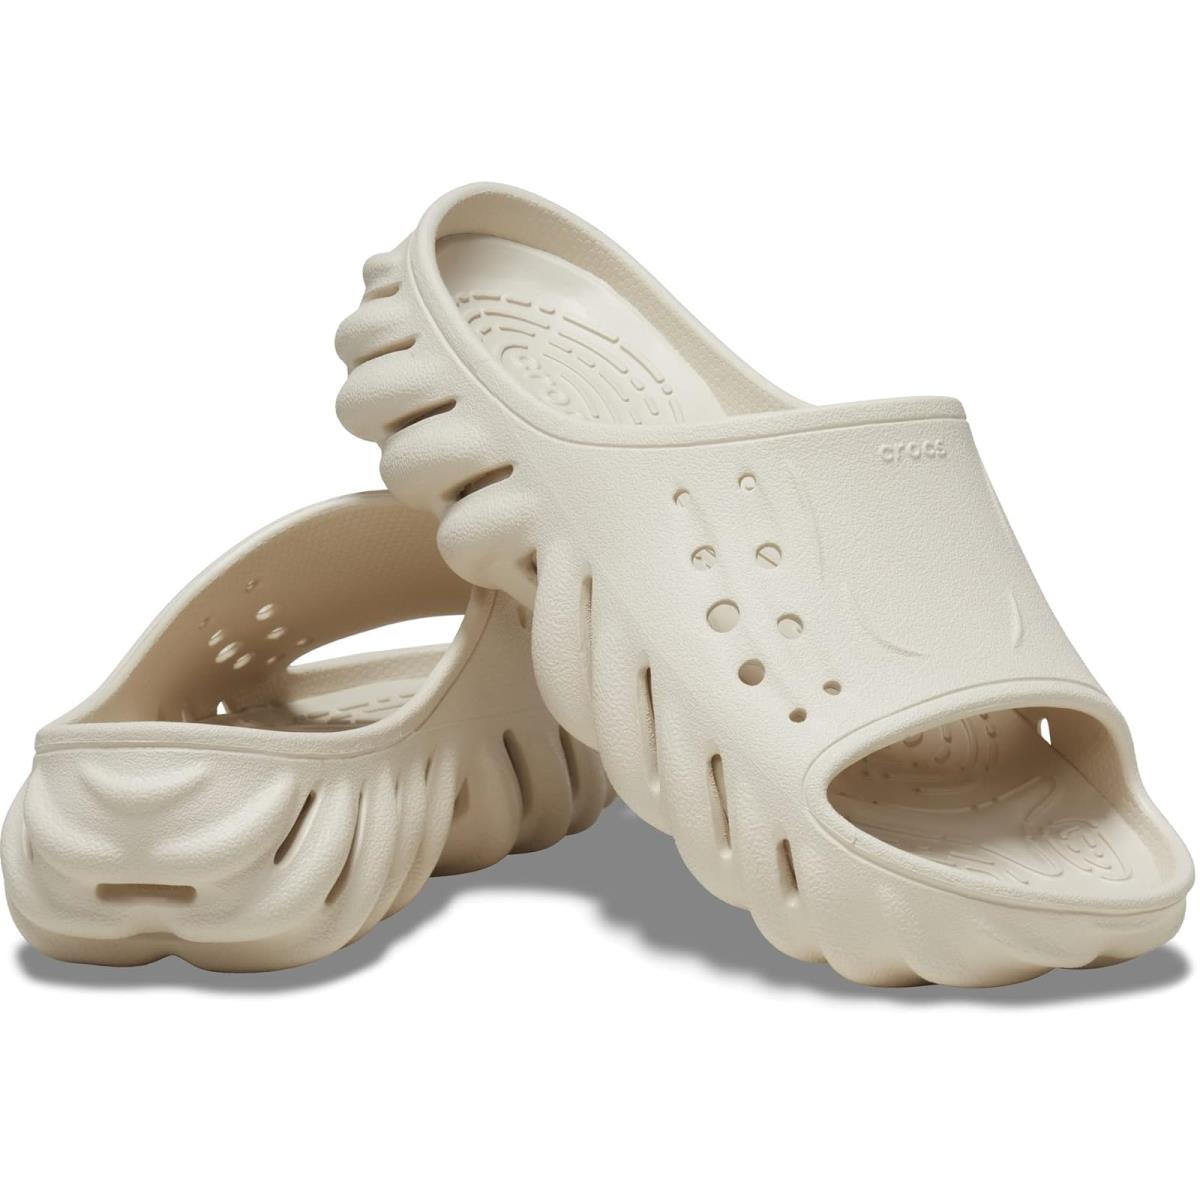 Unisex Sandals Crocs Echo Slide Stucco